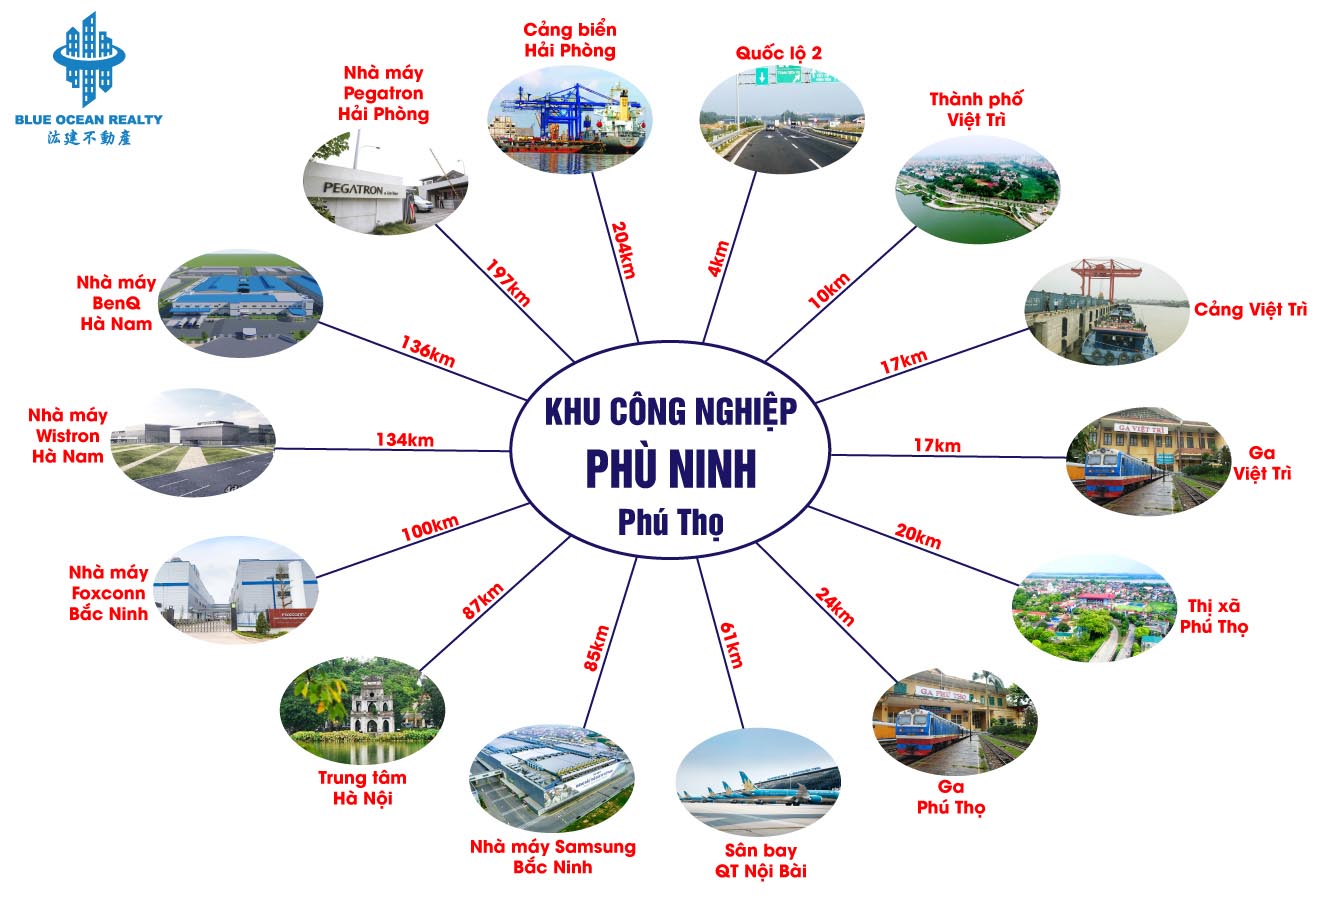 Khu công nghiệp (KCN) Phù Ninh tỉnh Phú Thọ